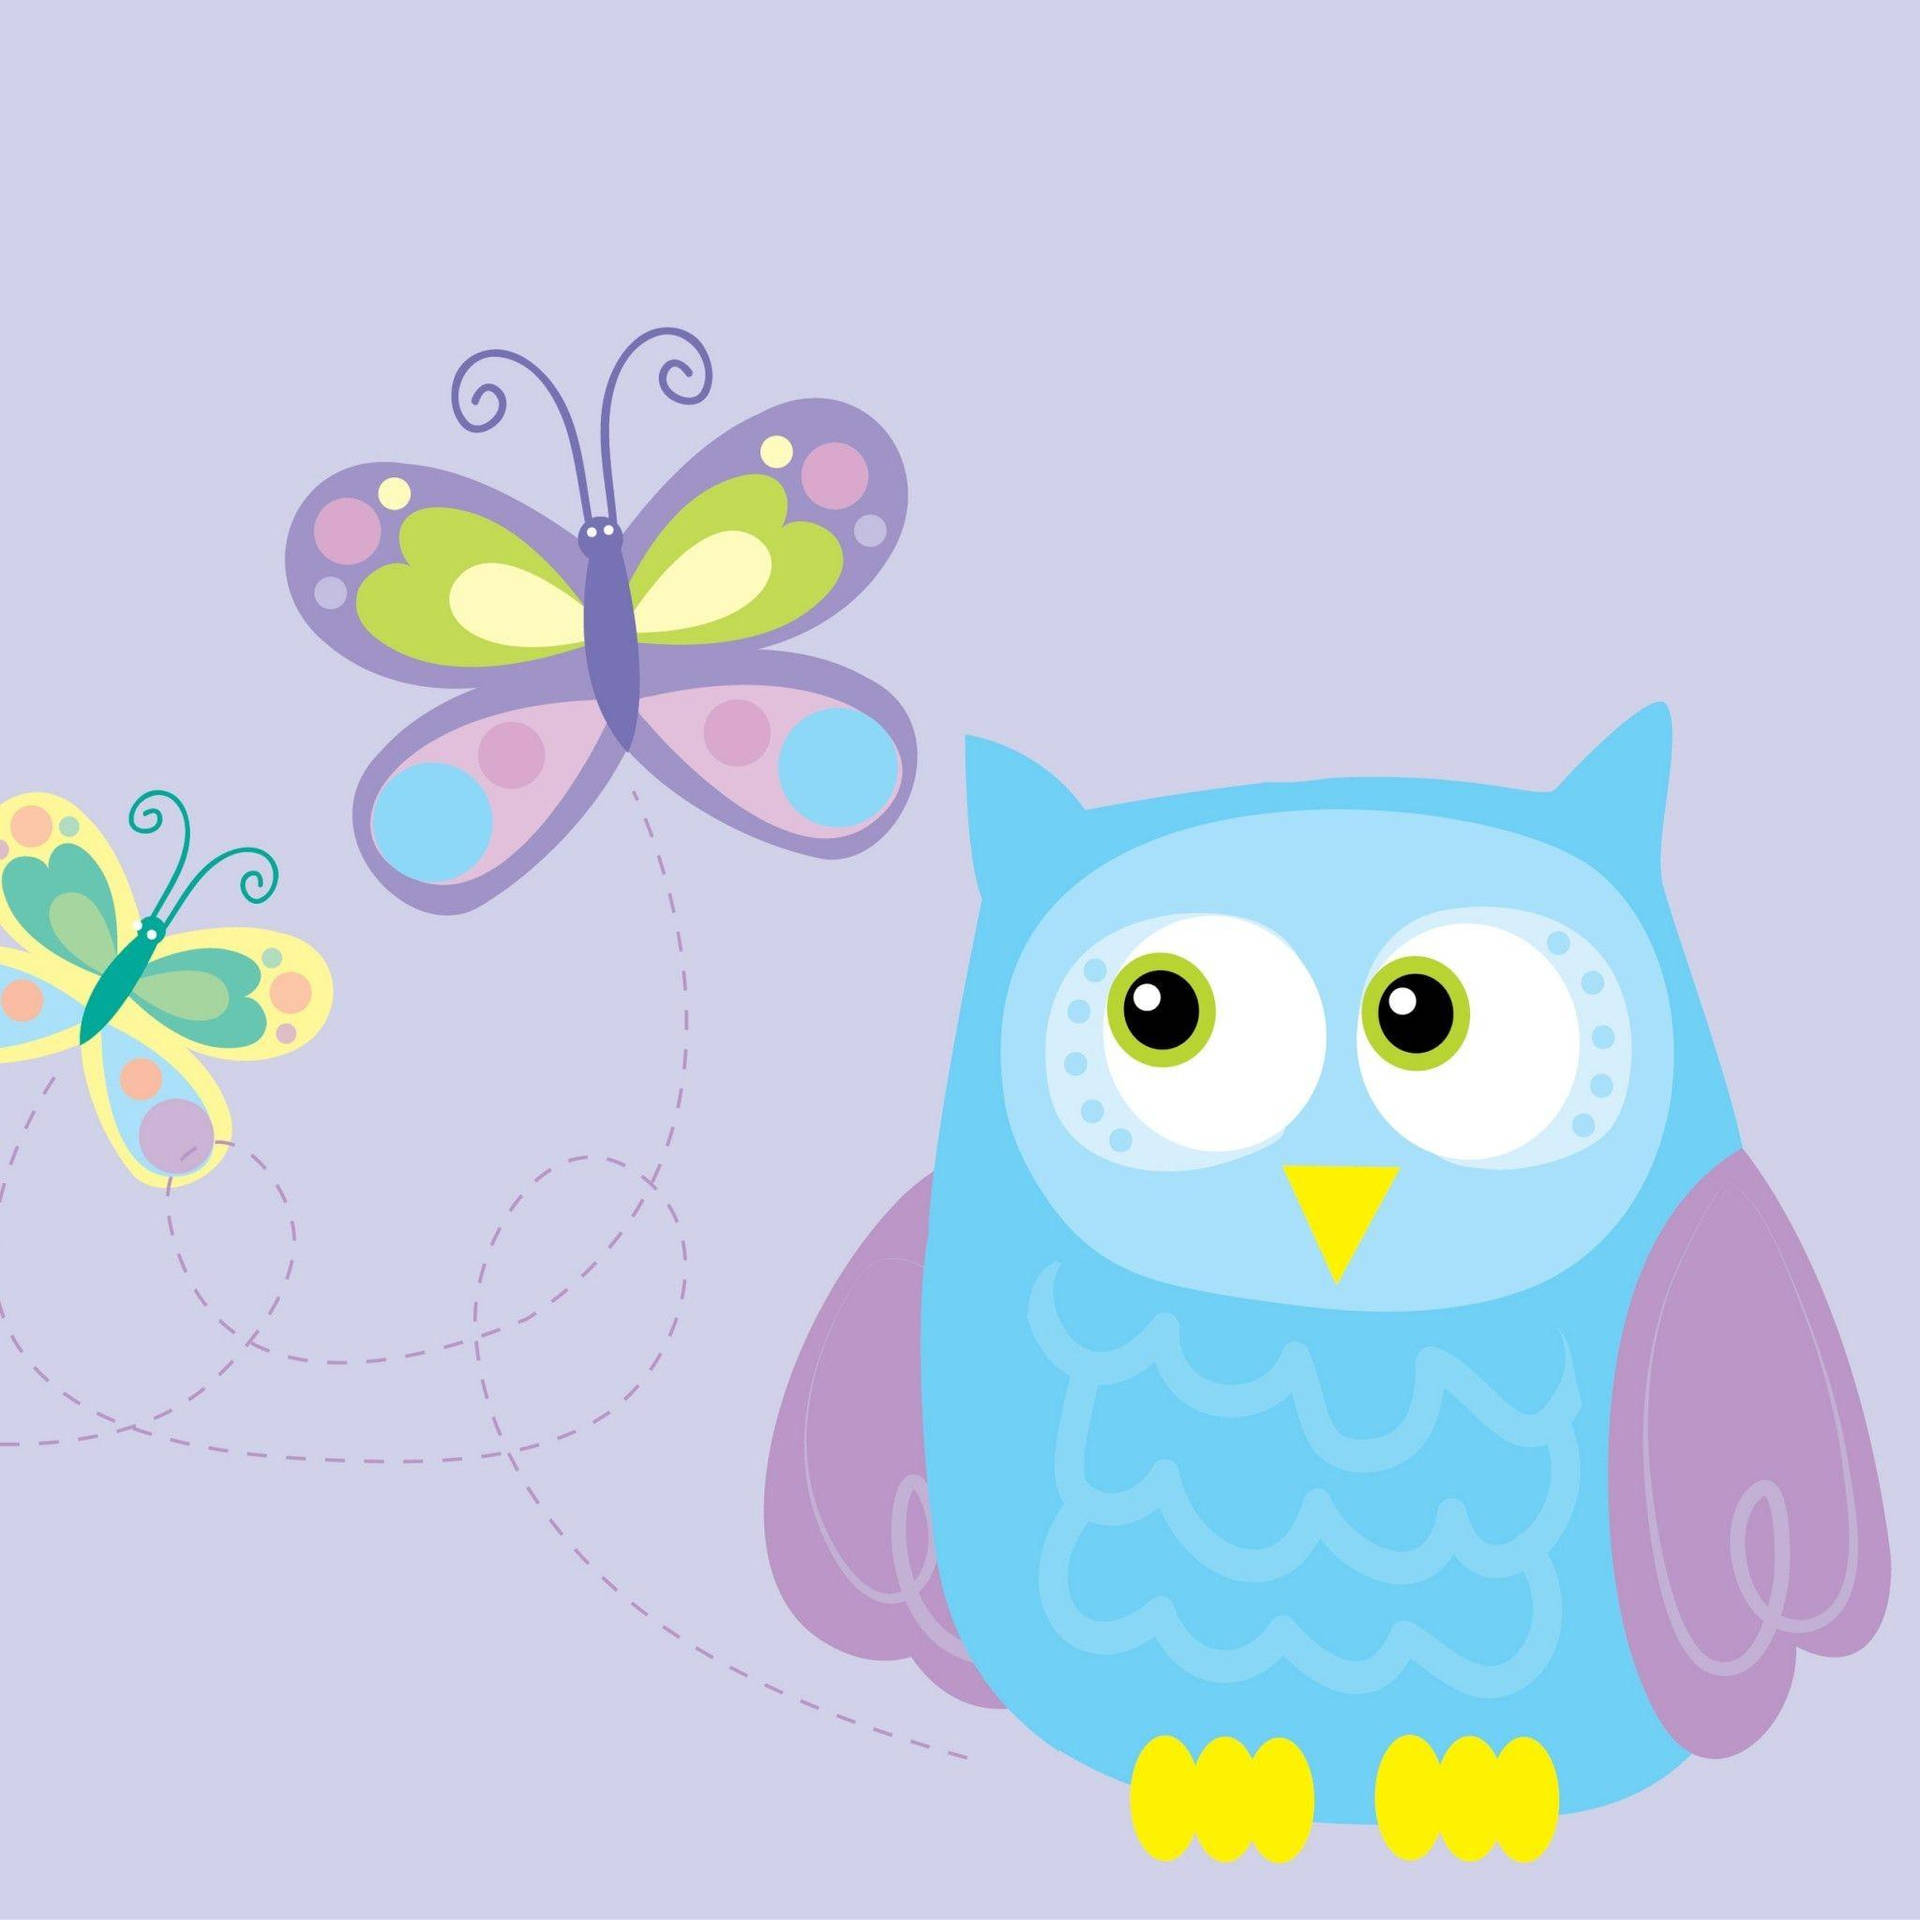 Cute Owl And Butterflies Wallpaper